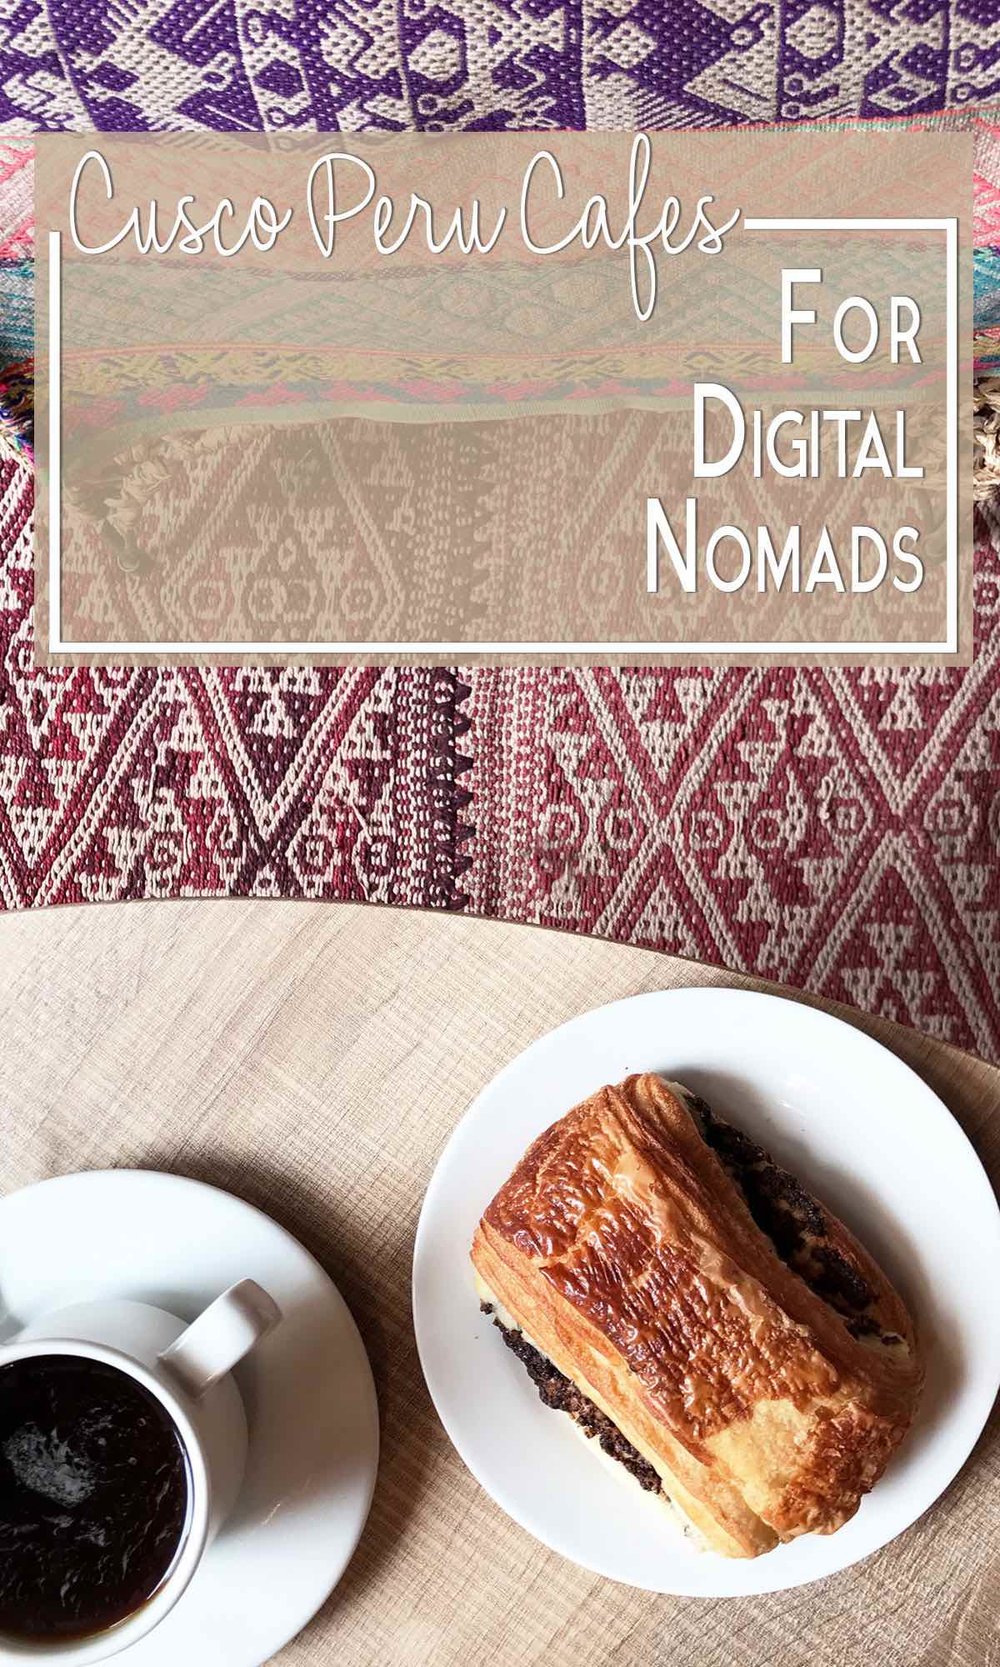 Cusco cafes for digital nomads